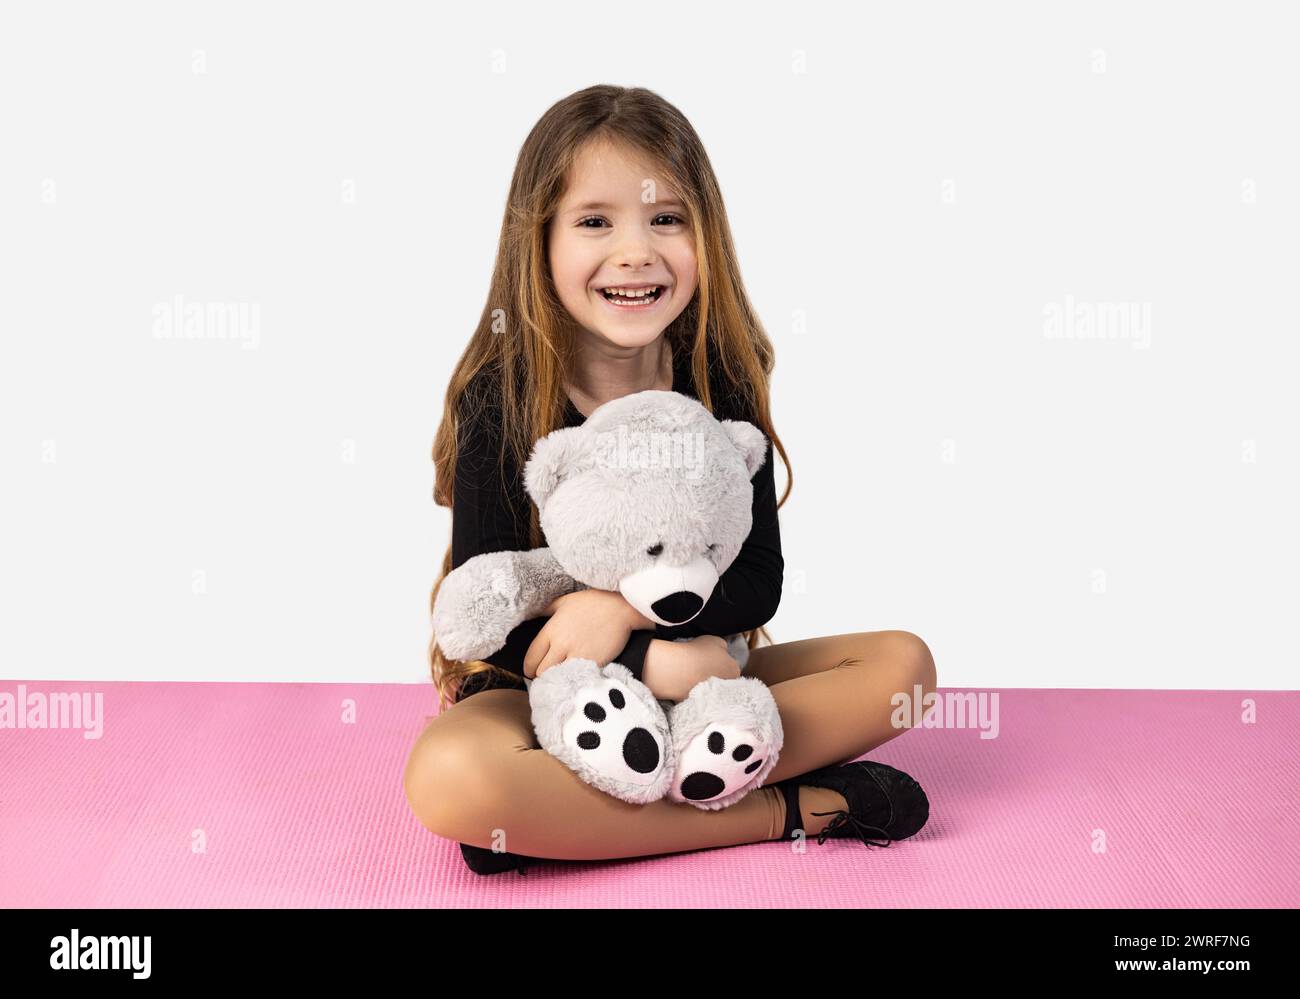 Niña sonriente vestida con ropa negra de gimnasio, sosteniendo un oso de peluche gris en sus brazos, sentada en una esterilla de yoga rosa, aislada en un backgr de estudio blanco Foto de stock